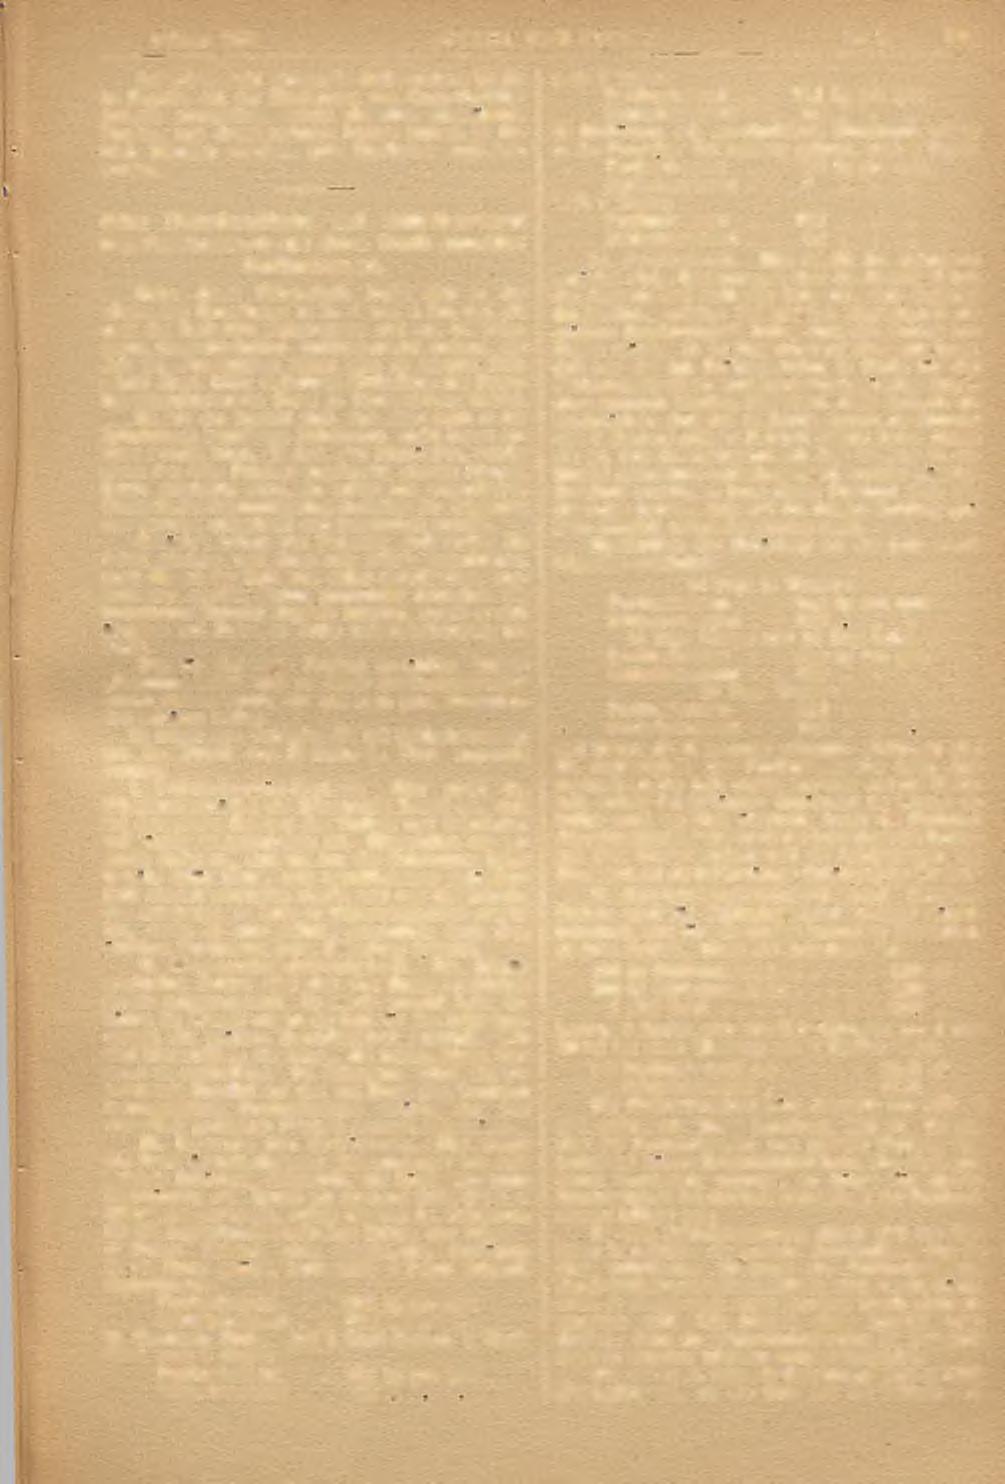 februar 1886. STA lll UND EISEN.6 Nr. 2.